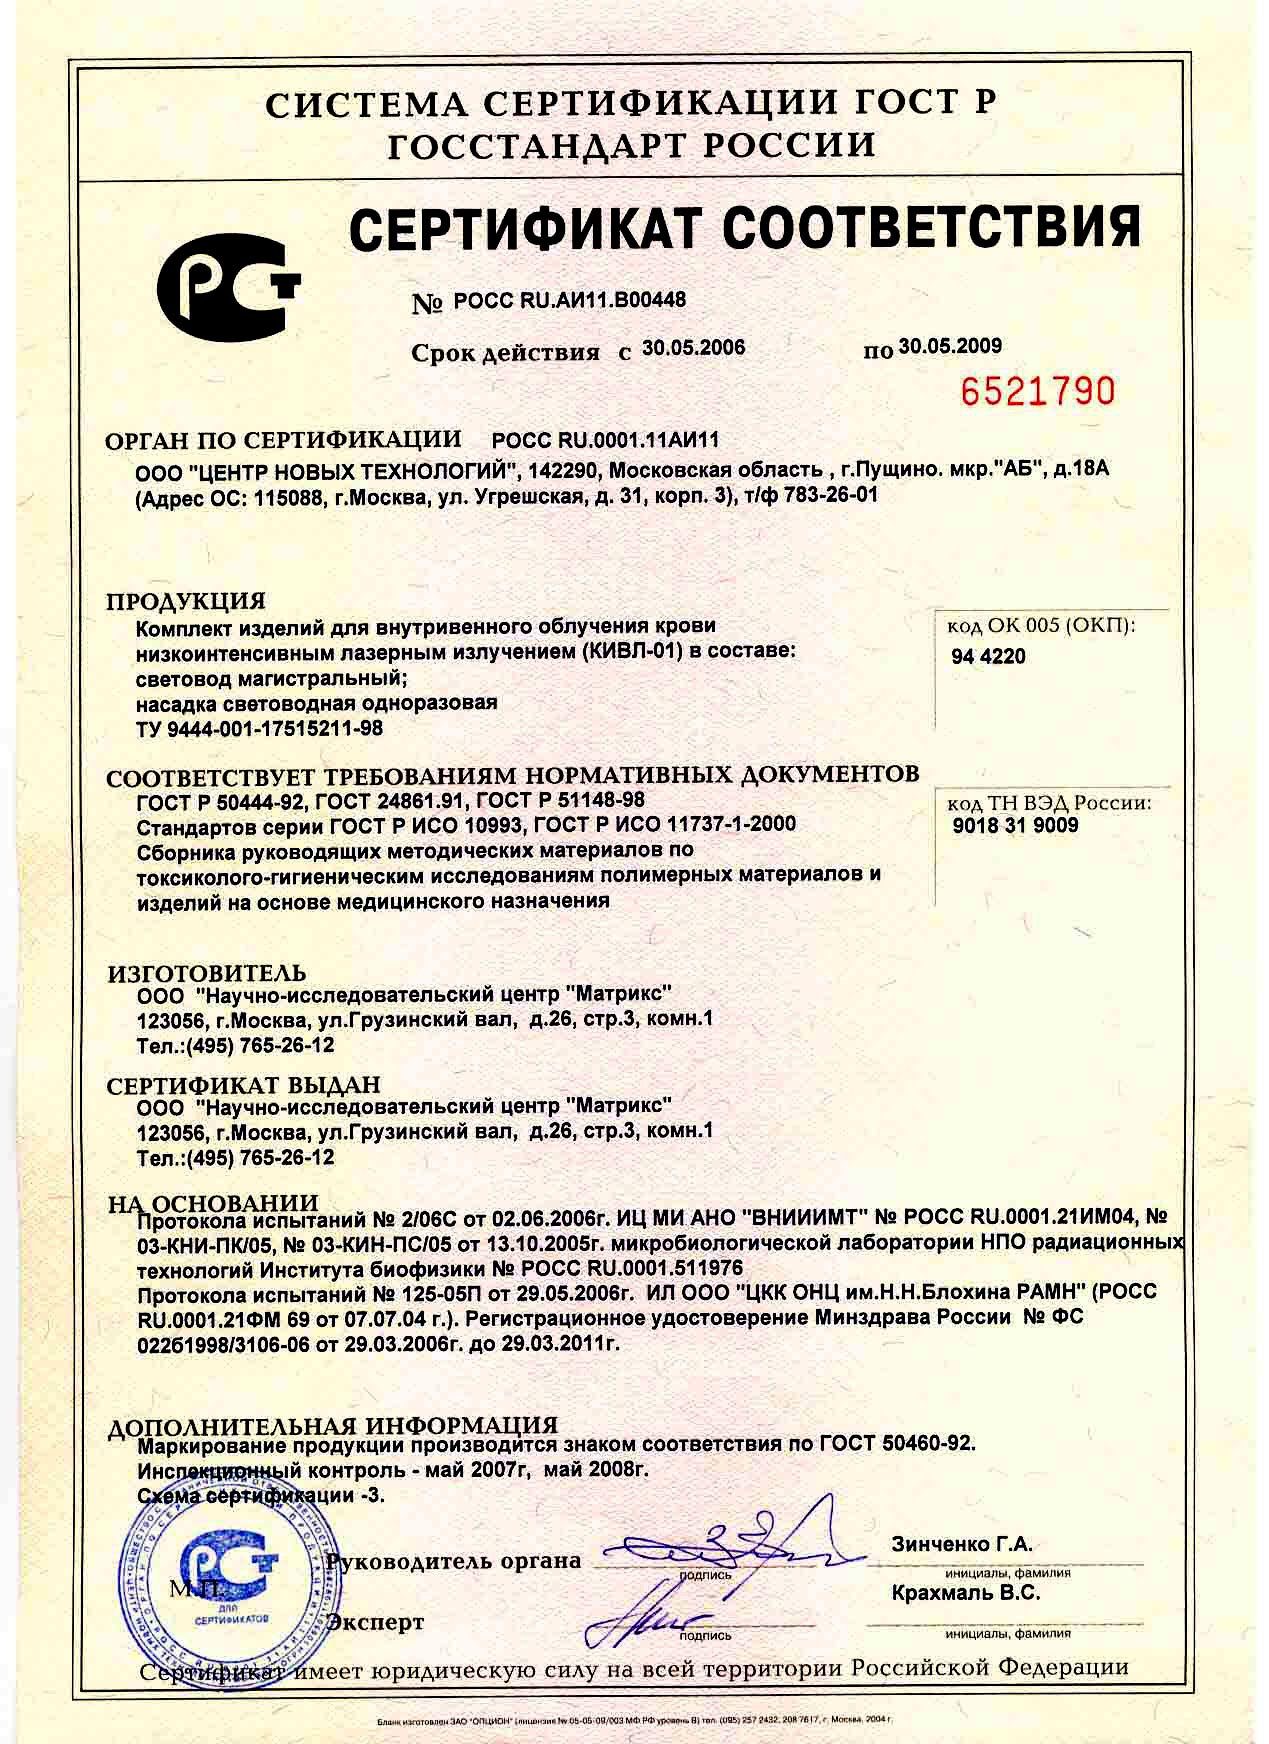 сертификат КИВЛ-01 - комплект изделий для внутреннего облучения крови